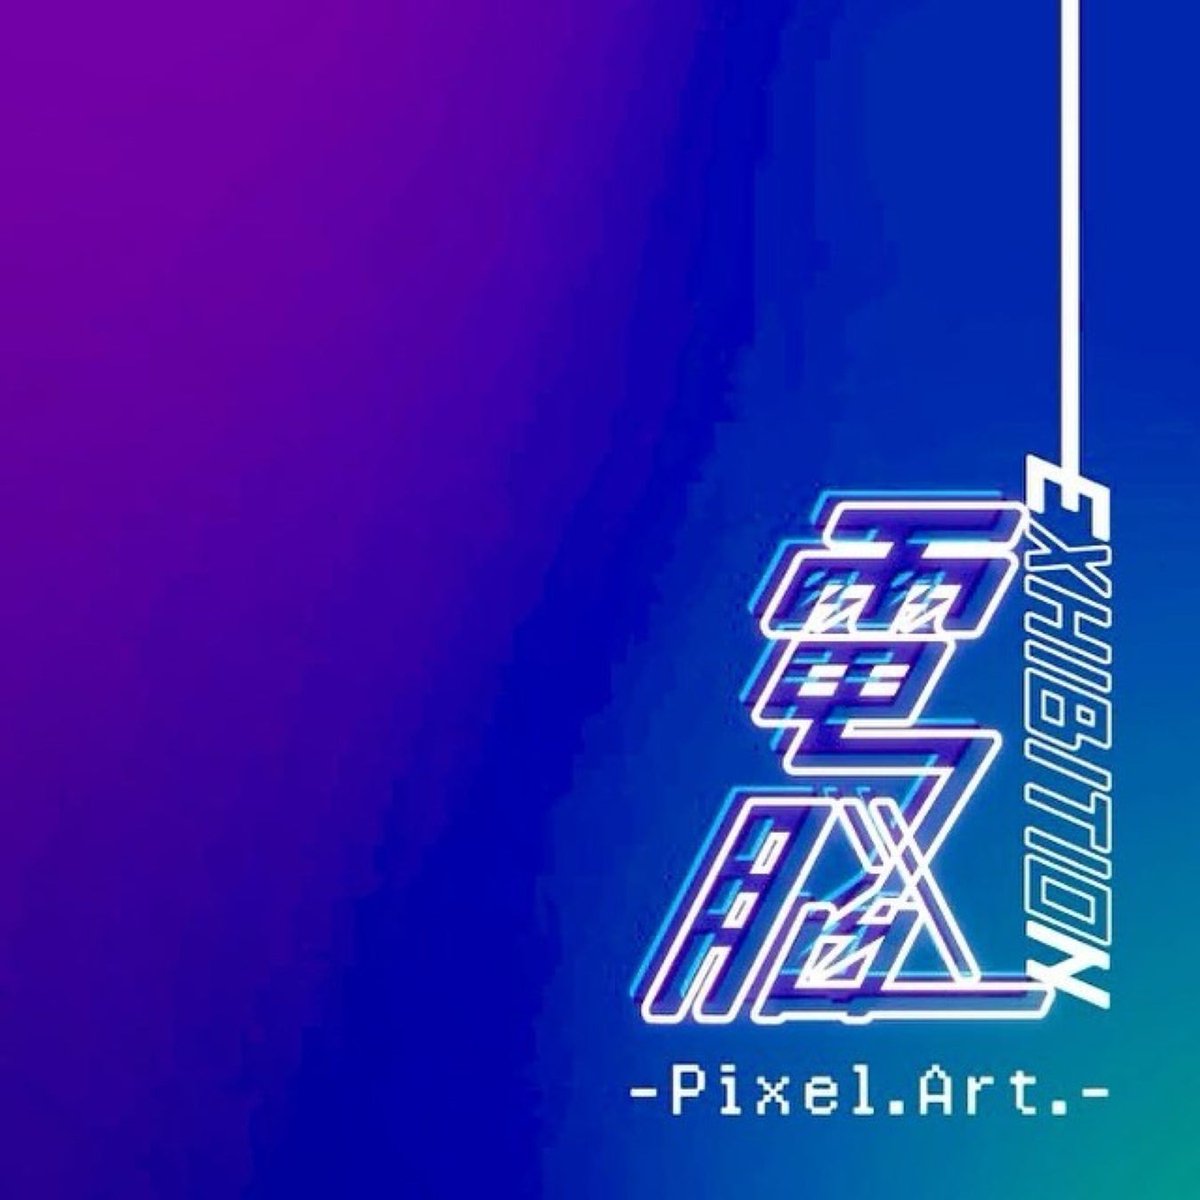 【奈良 蔦屋書店】「電脳EXHIBITION-Pixel.Art.-」フェア開催
👇詳しくはこちら👇
genicpress.com/?p=471621
#ピクセルアート #電脳